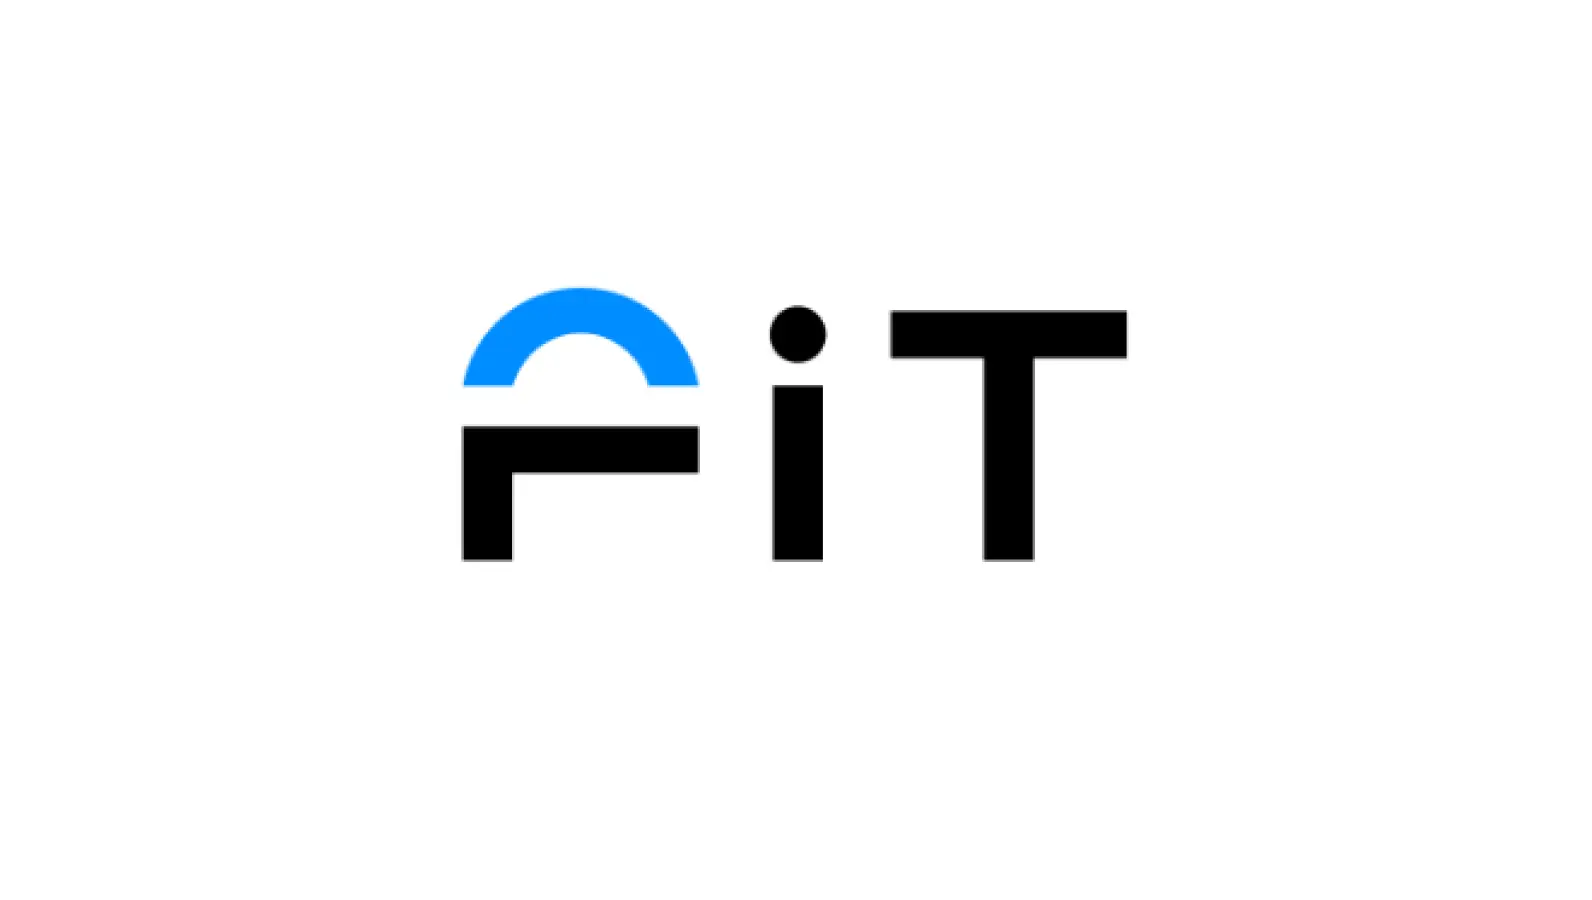 次世代型フィットネスジム「LifeFit」運営のLifeCoach、プレシリーズAラウンドで約1.2億円の資金調達を実施の画像